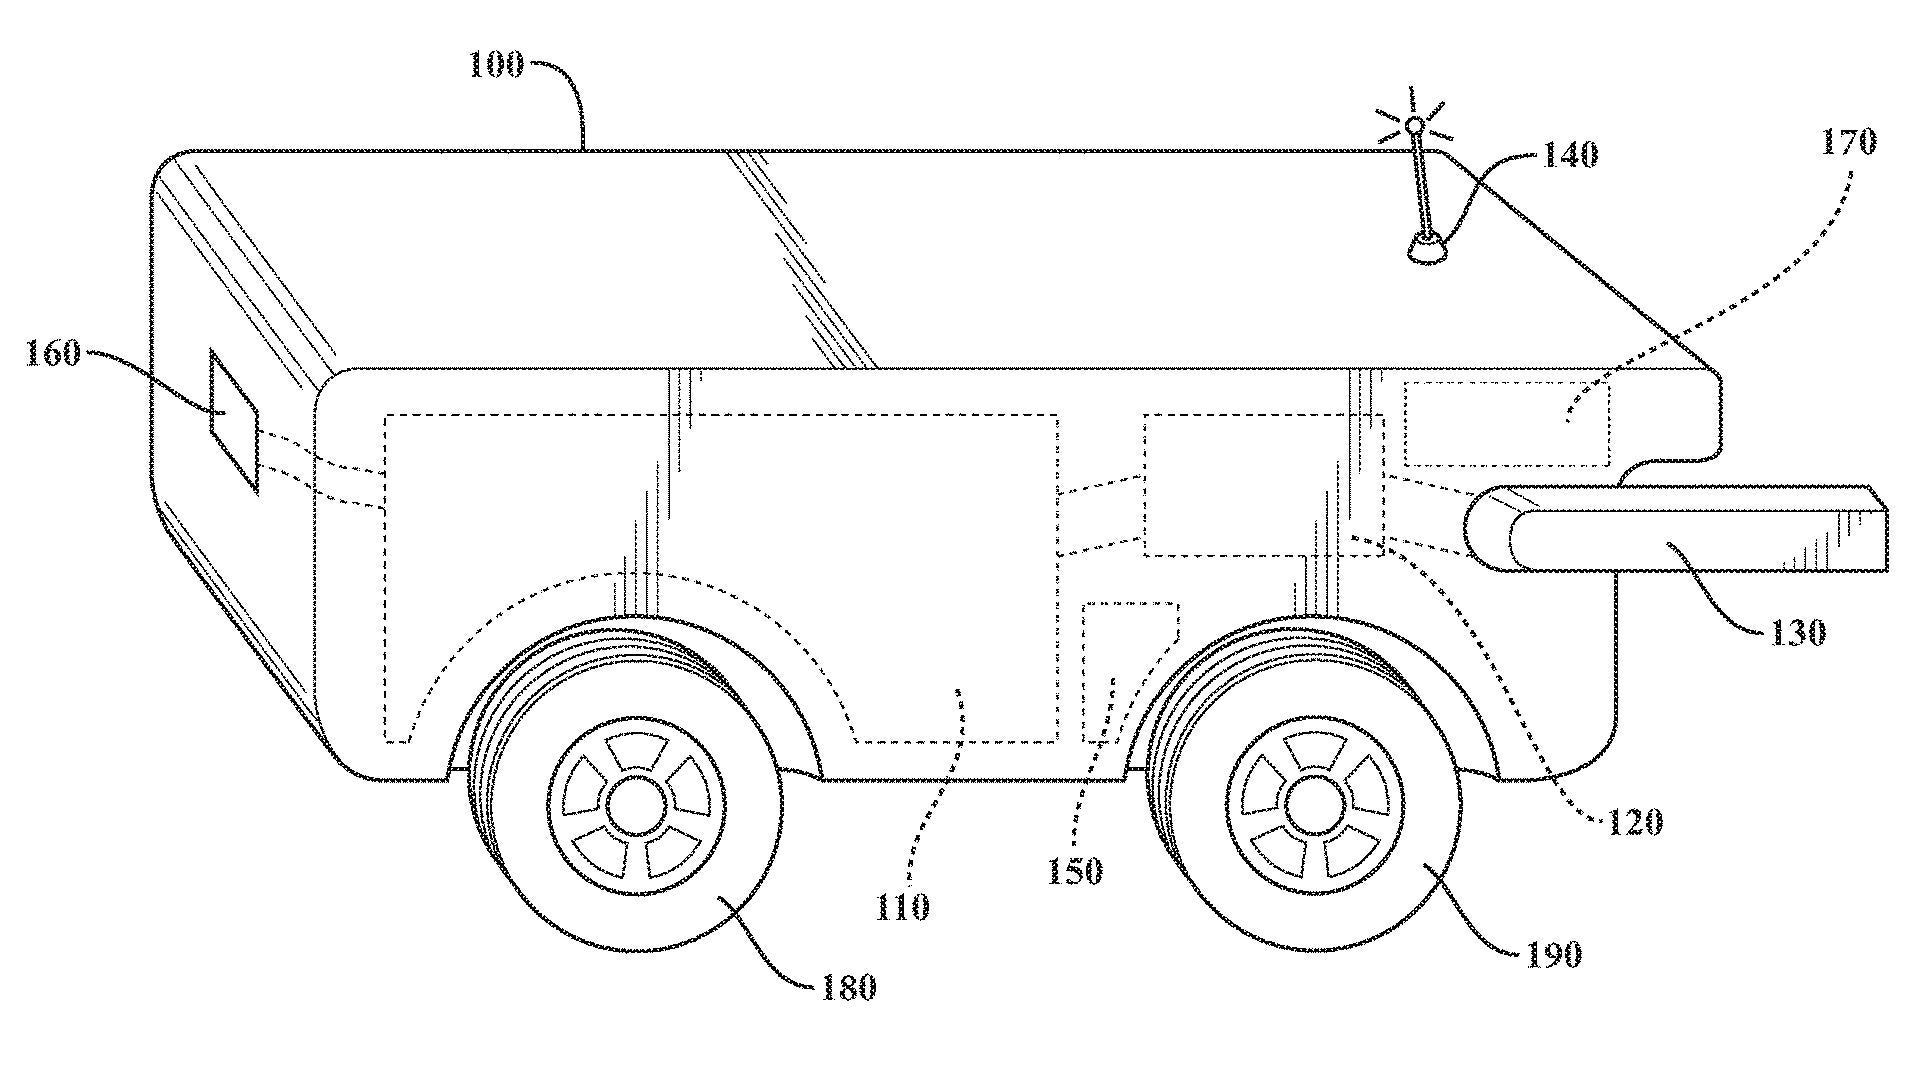 Náčrt patentu speciálního tankovacího vozu 2